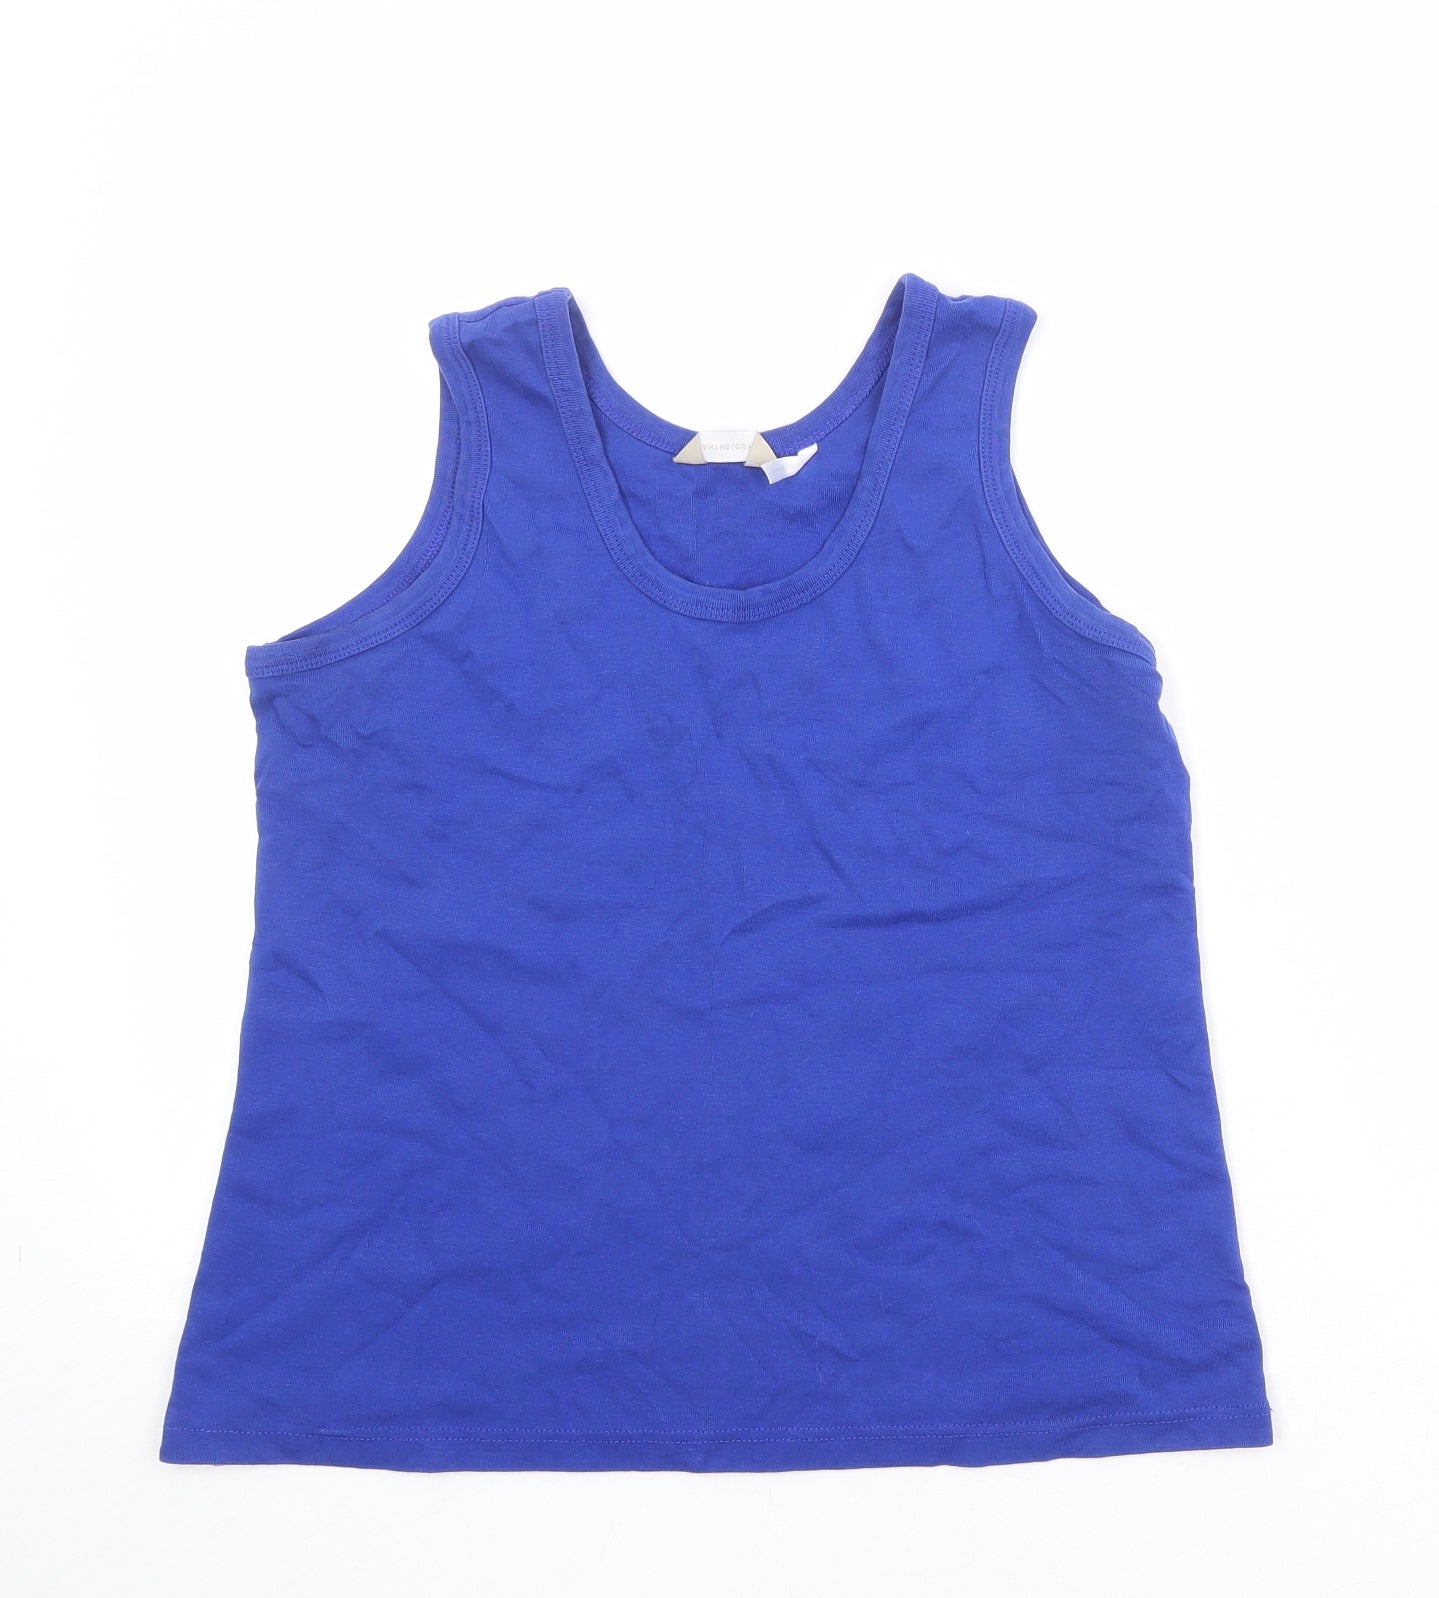 Anthology Womens Blue 100% Cotton Basic Tank Size 16 Round Neck - Size 16/18